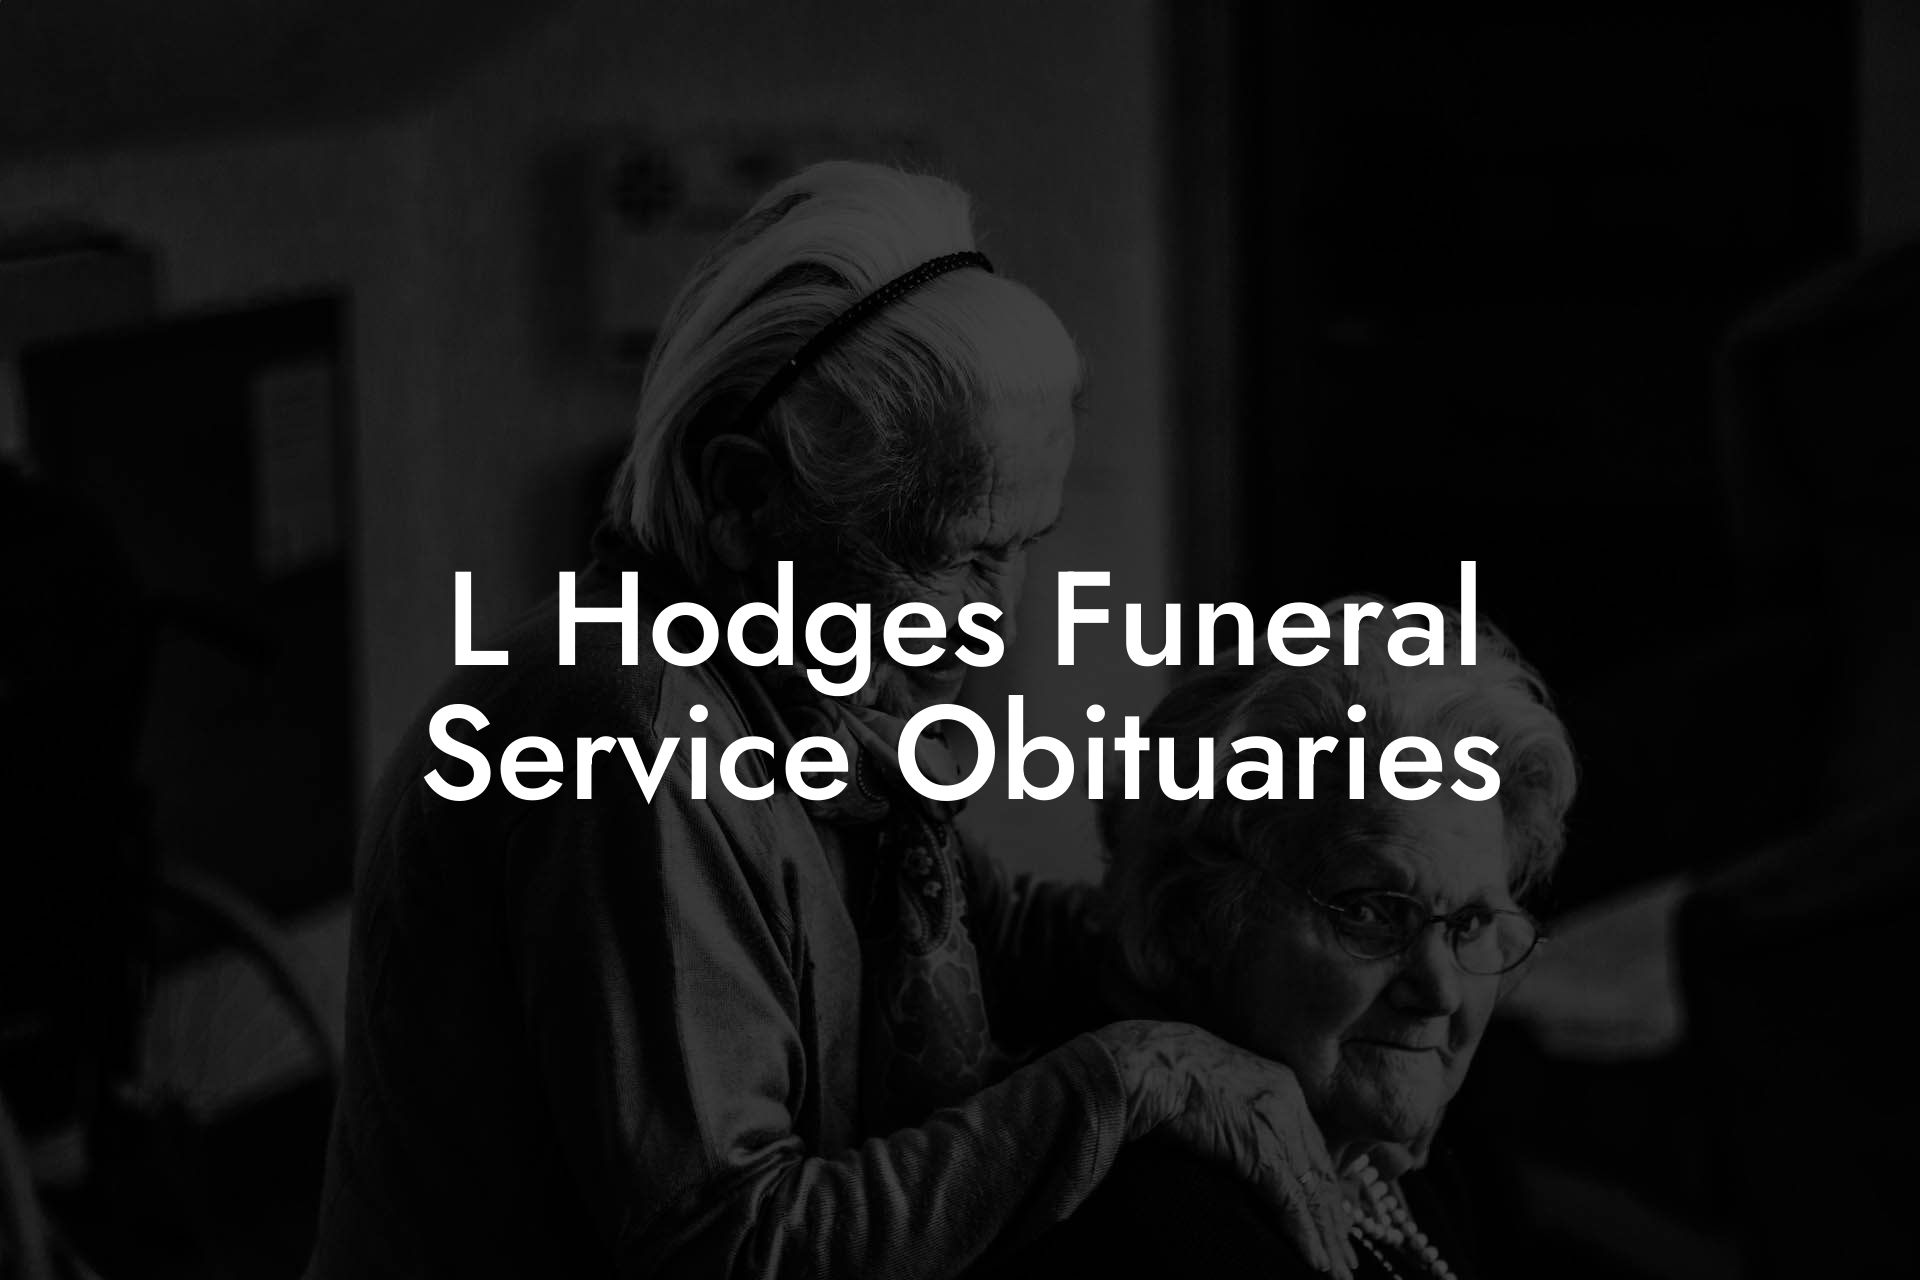 L Hodges Funeral Service Obituaries